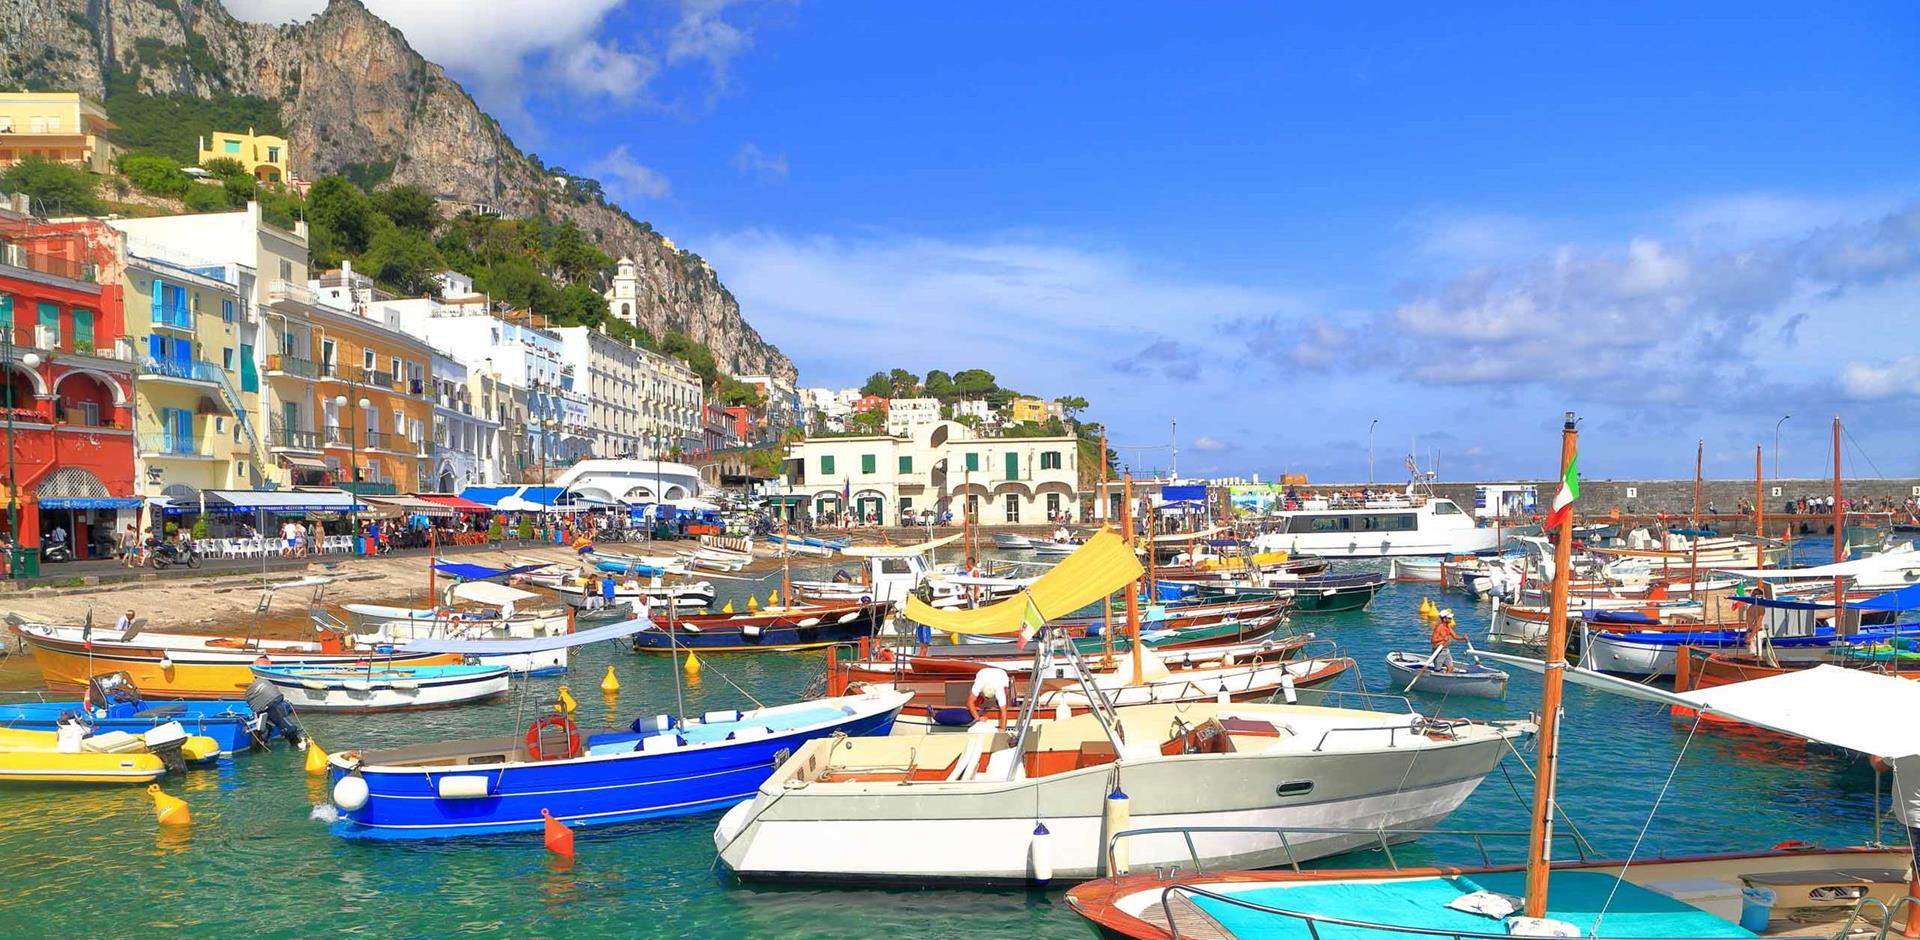 Fall in love with colourful Capri A&K Villas